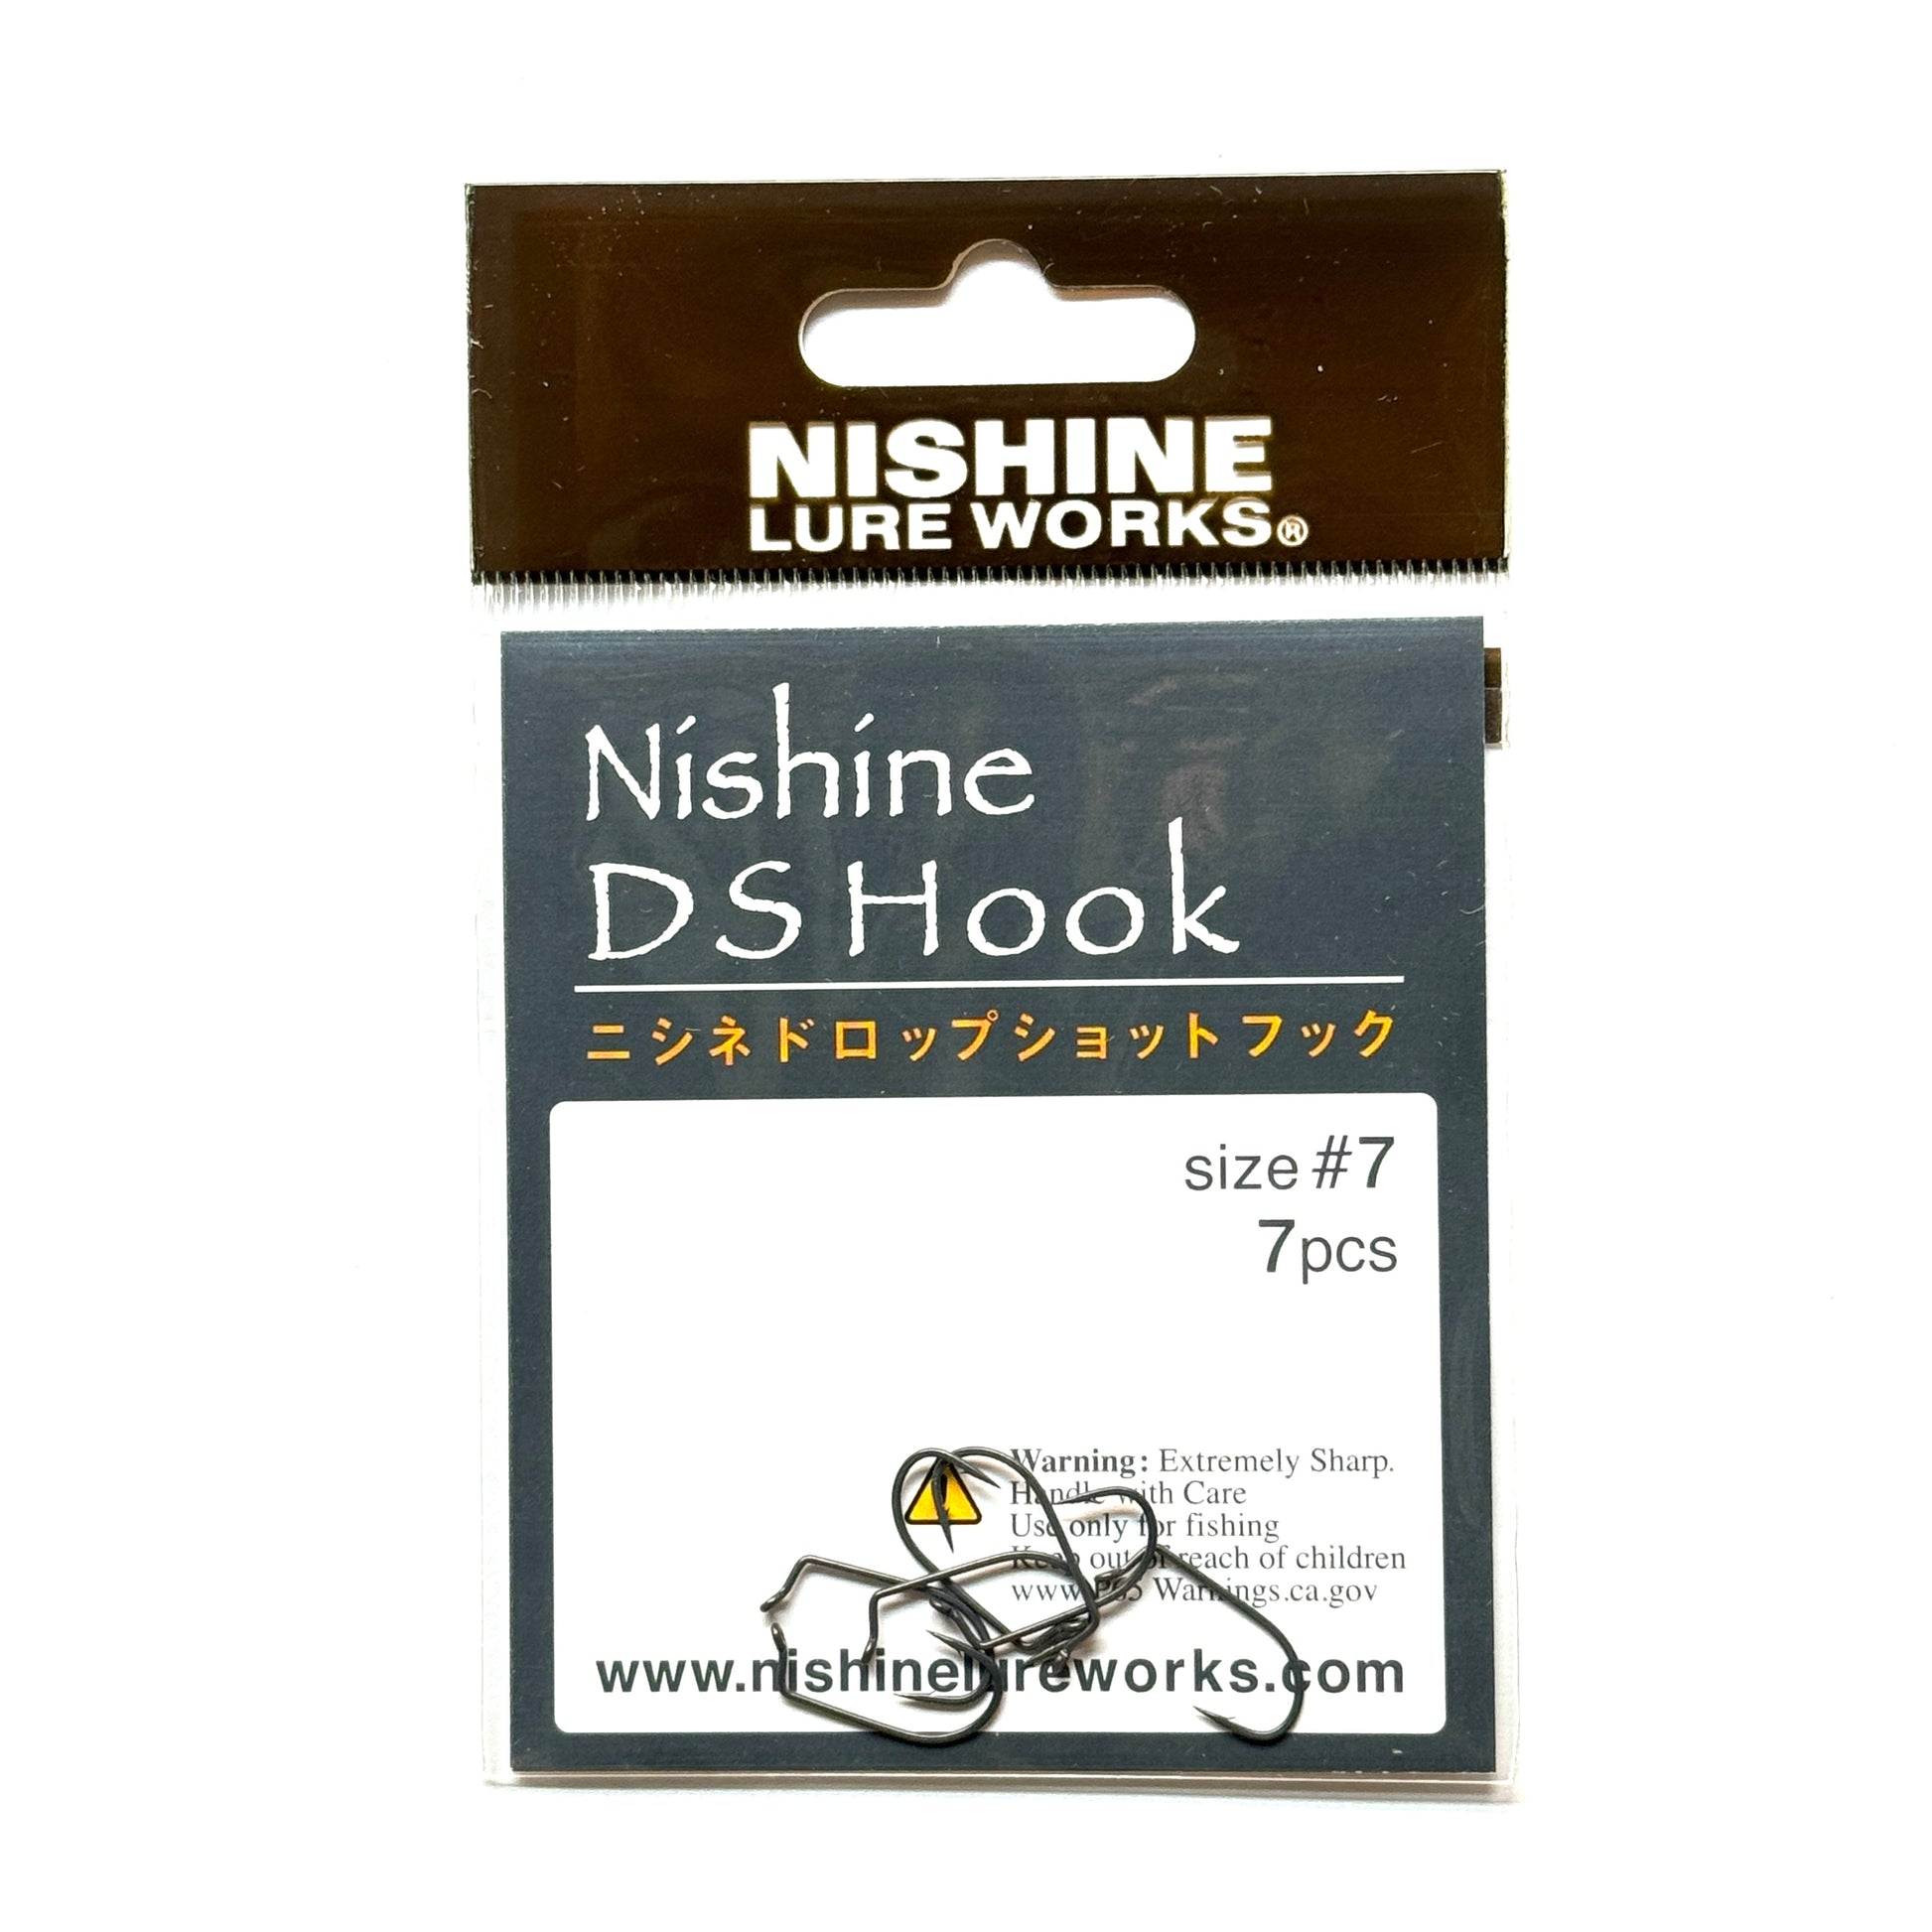 Nishine DS Hook – Nishine Lure Works